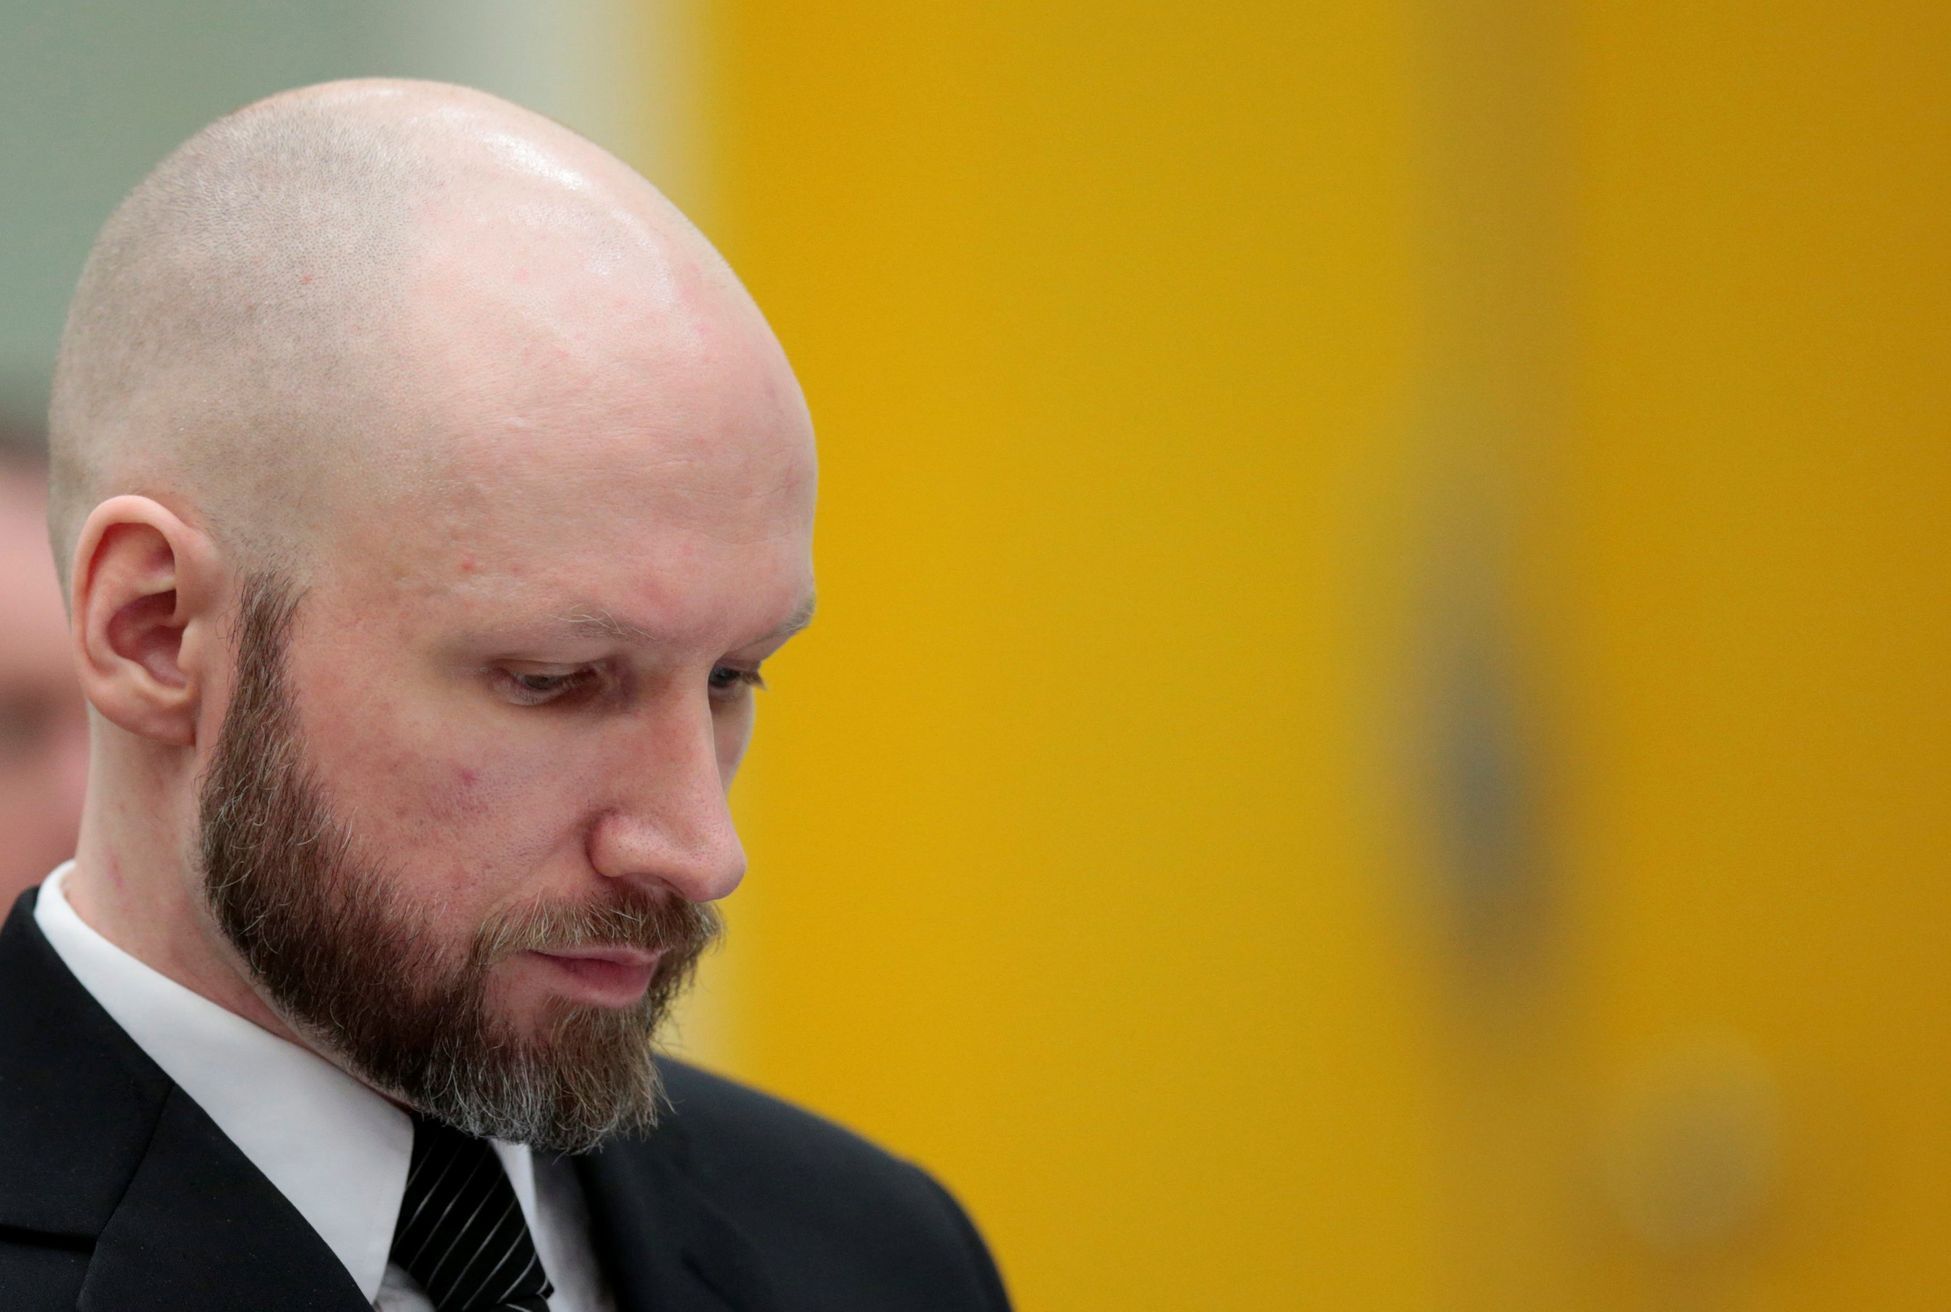 Terorista Anders Behring Breivik